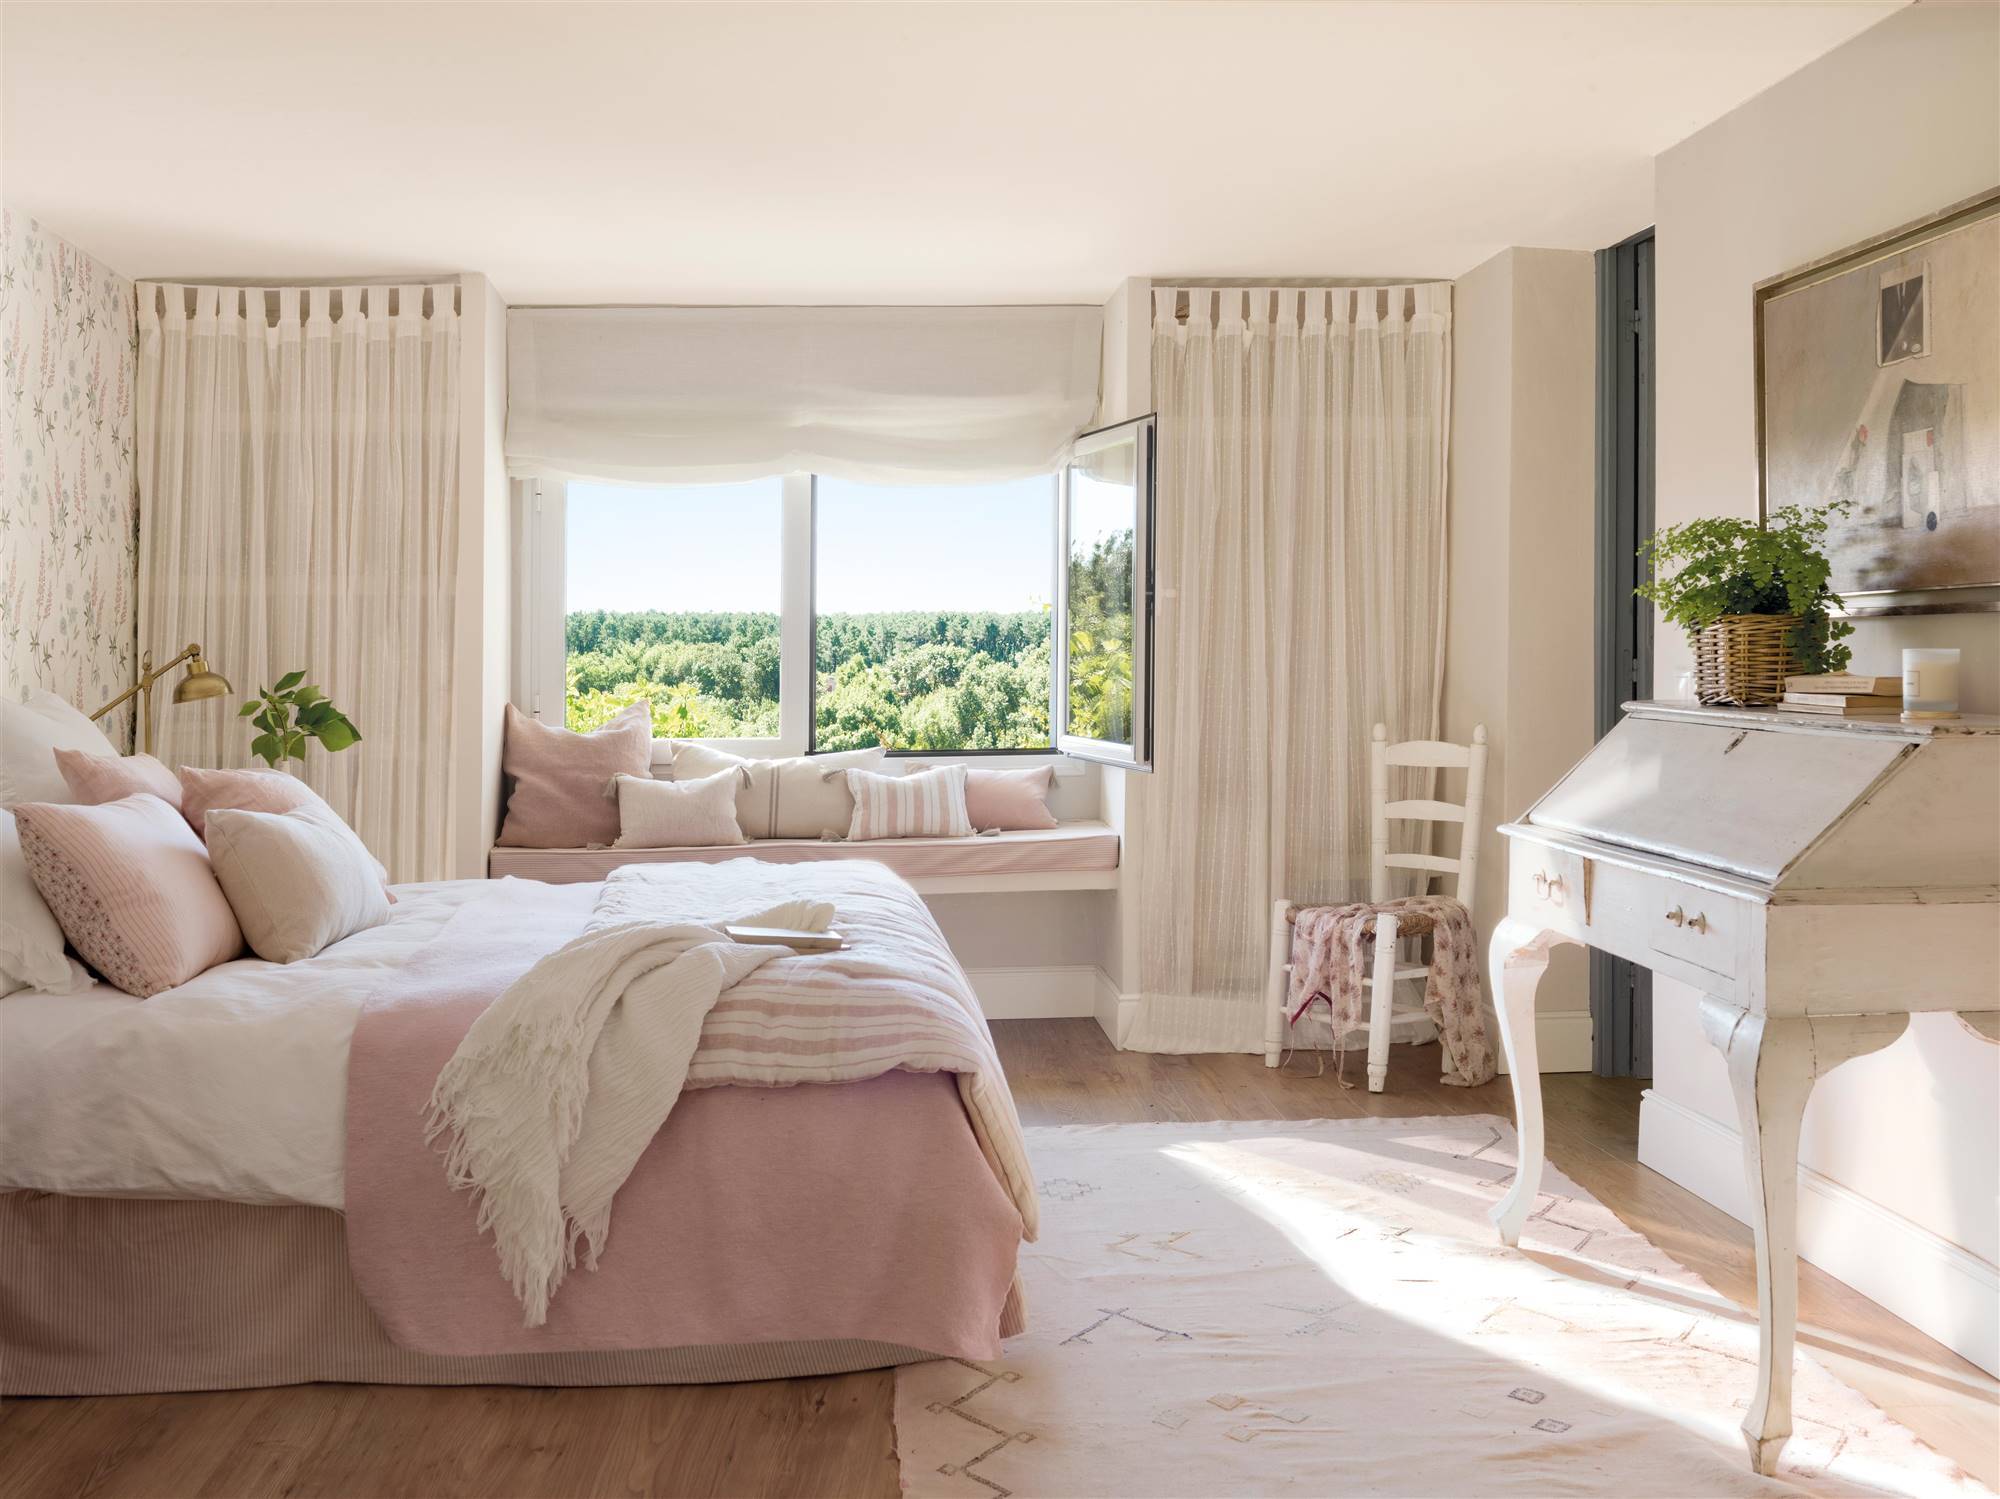 Dormitorio de verano en tonos rosas con banco mirador. 